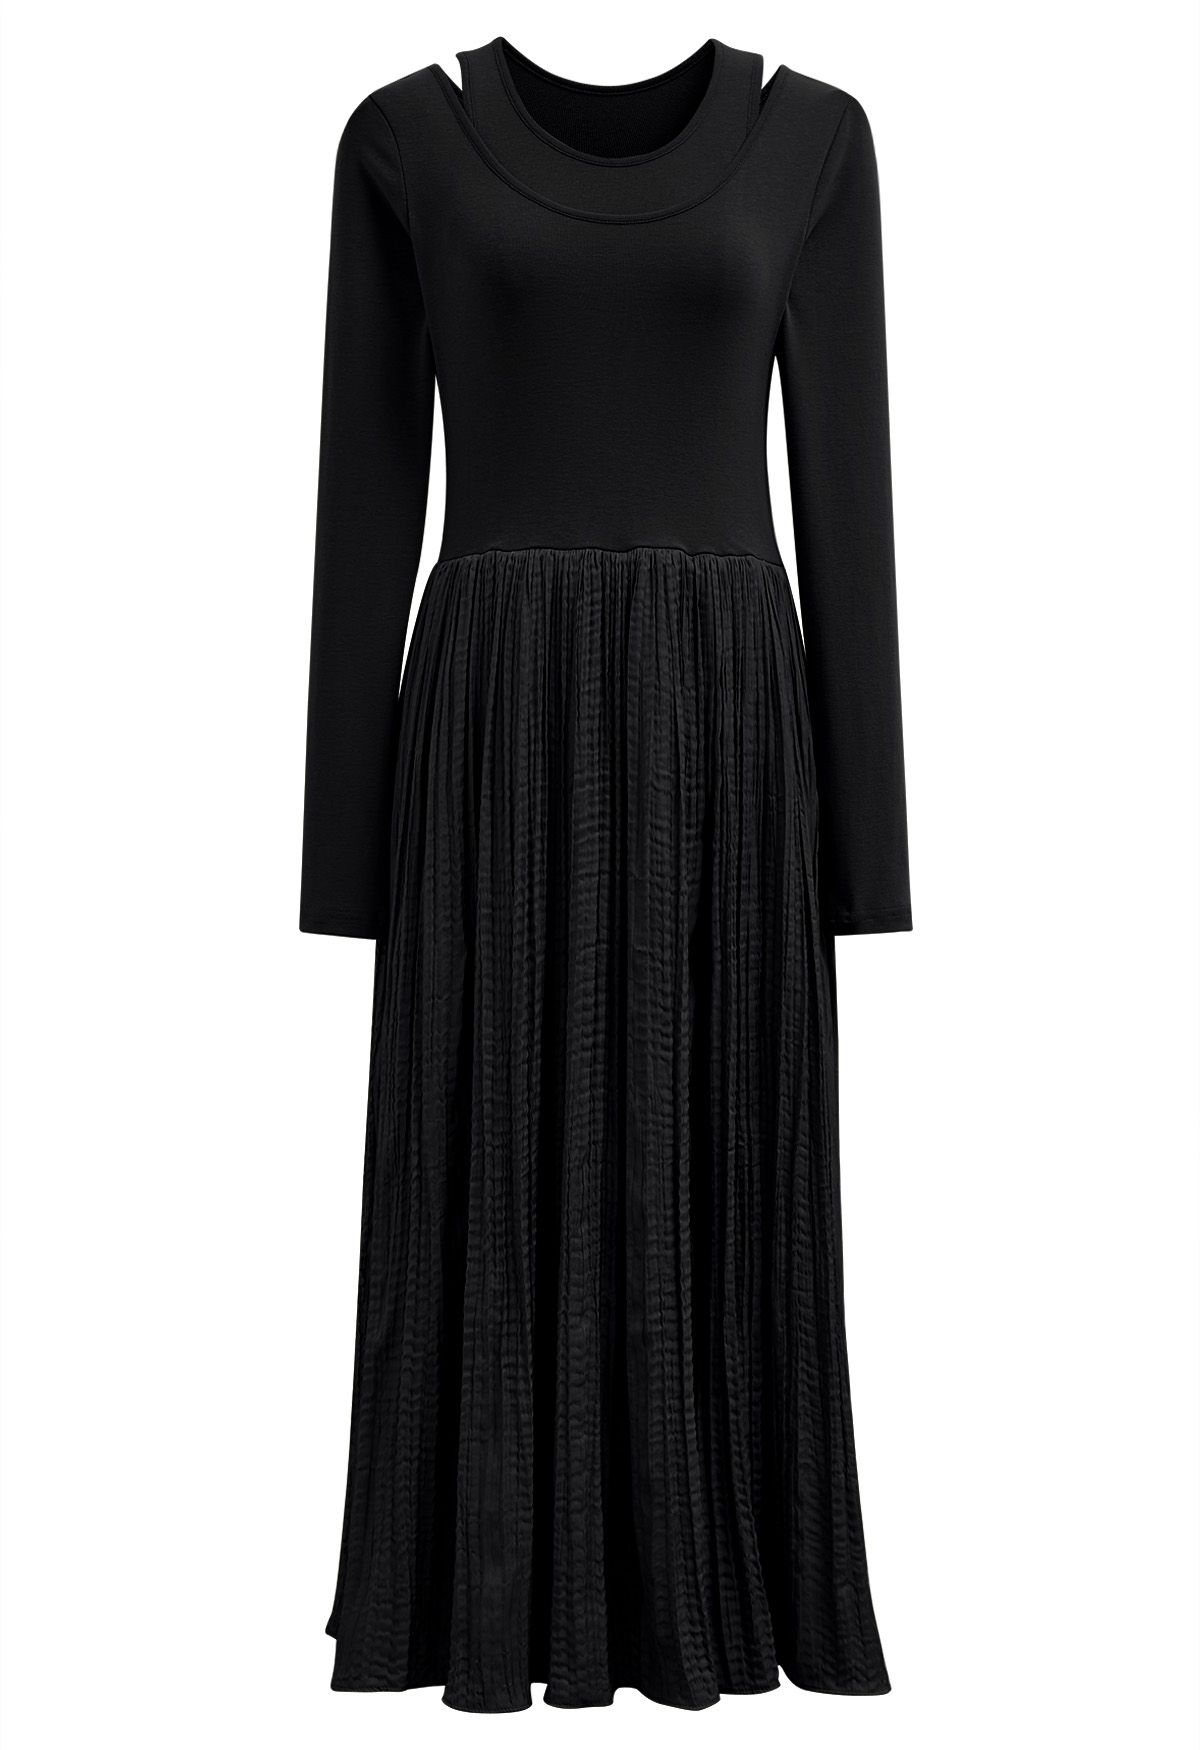 فستان متوسط الطول مقسم من قطعتين باللون الأسود